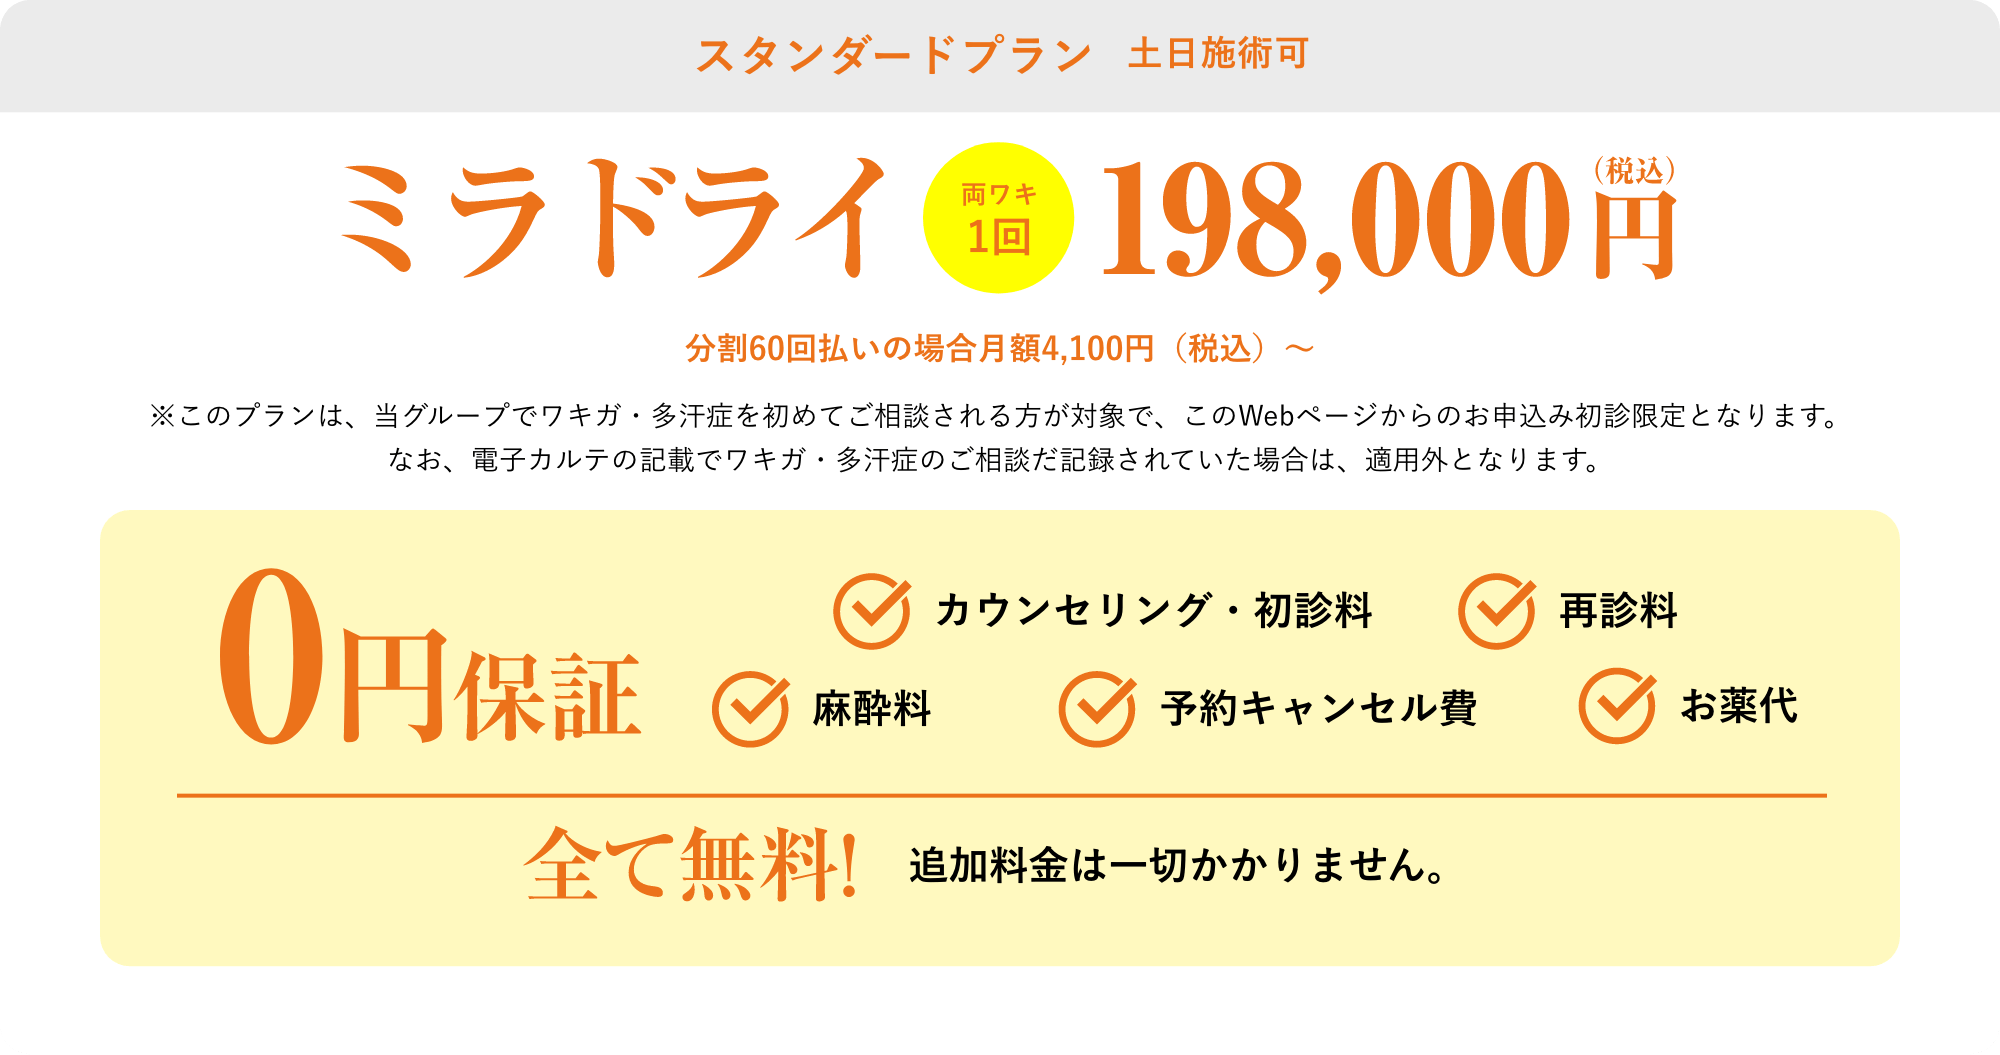 スタンダードプラン平日施術割キャンペーン198,000円